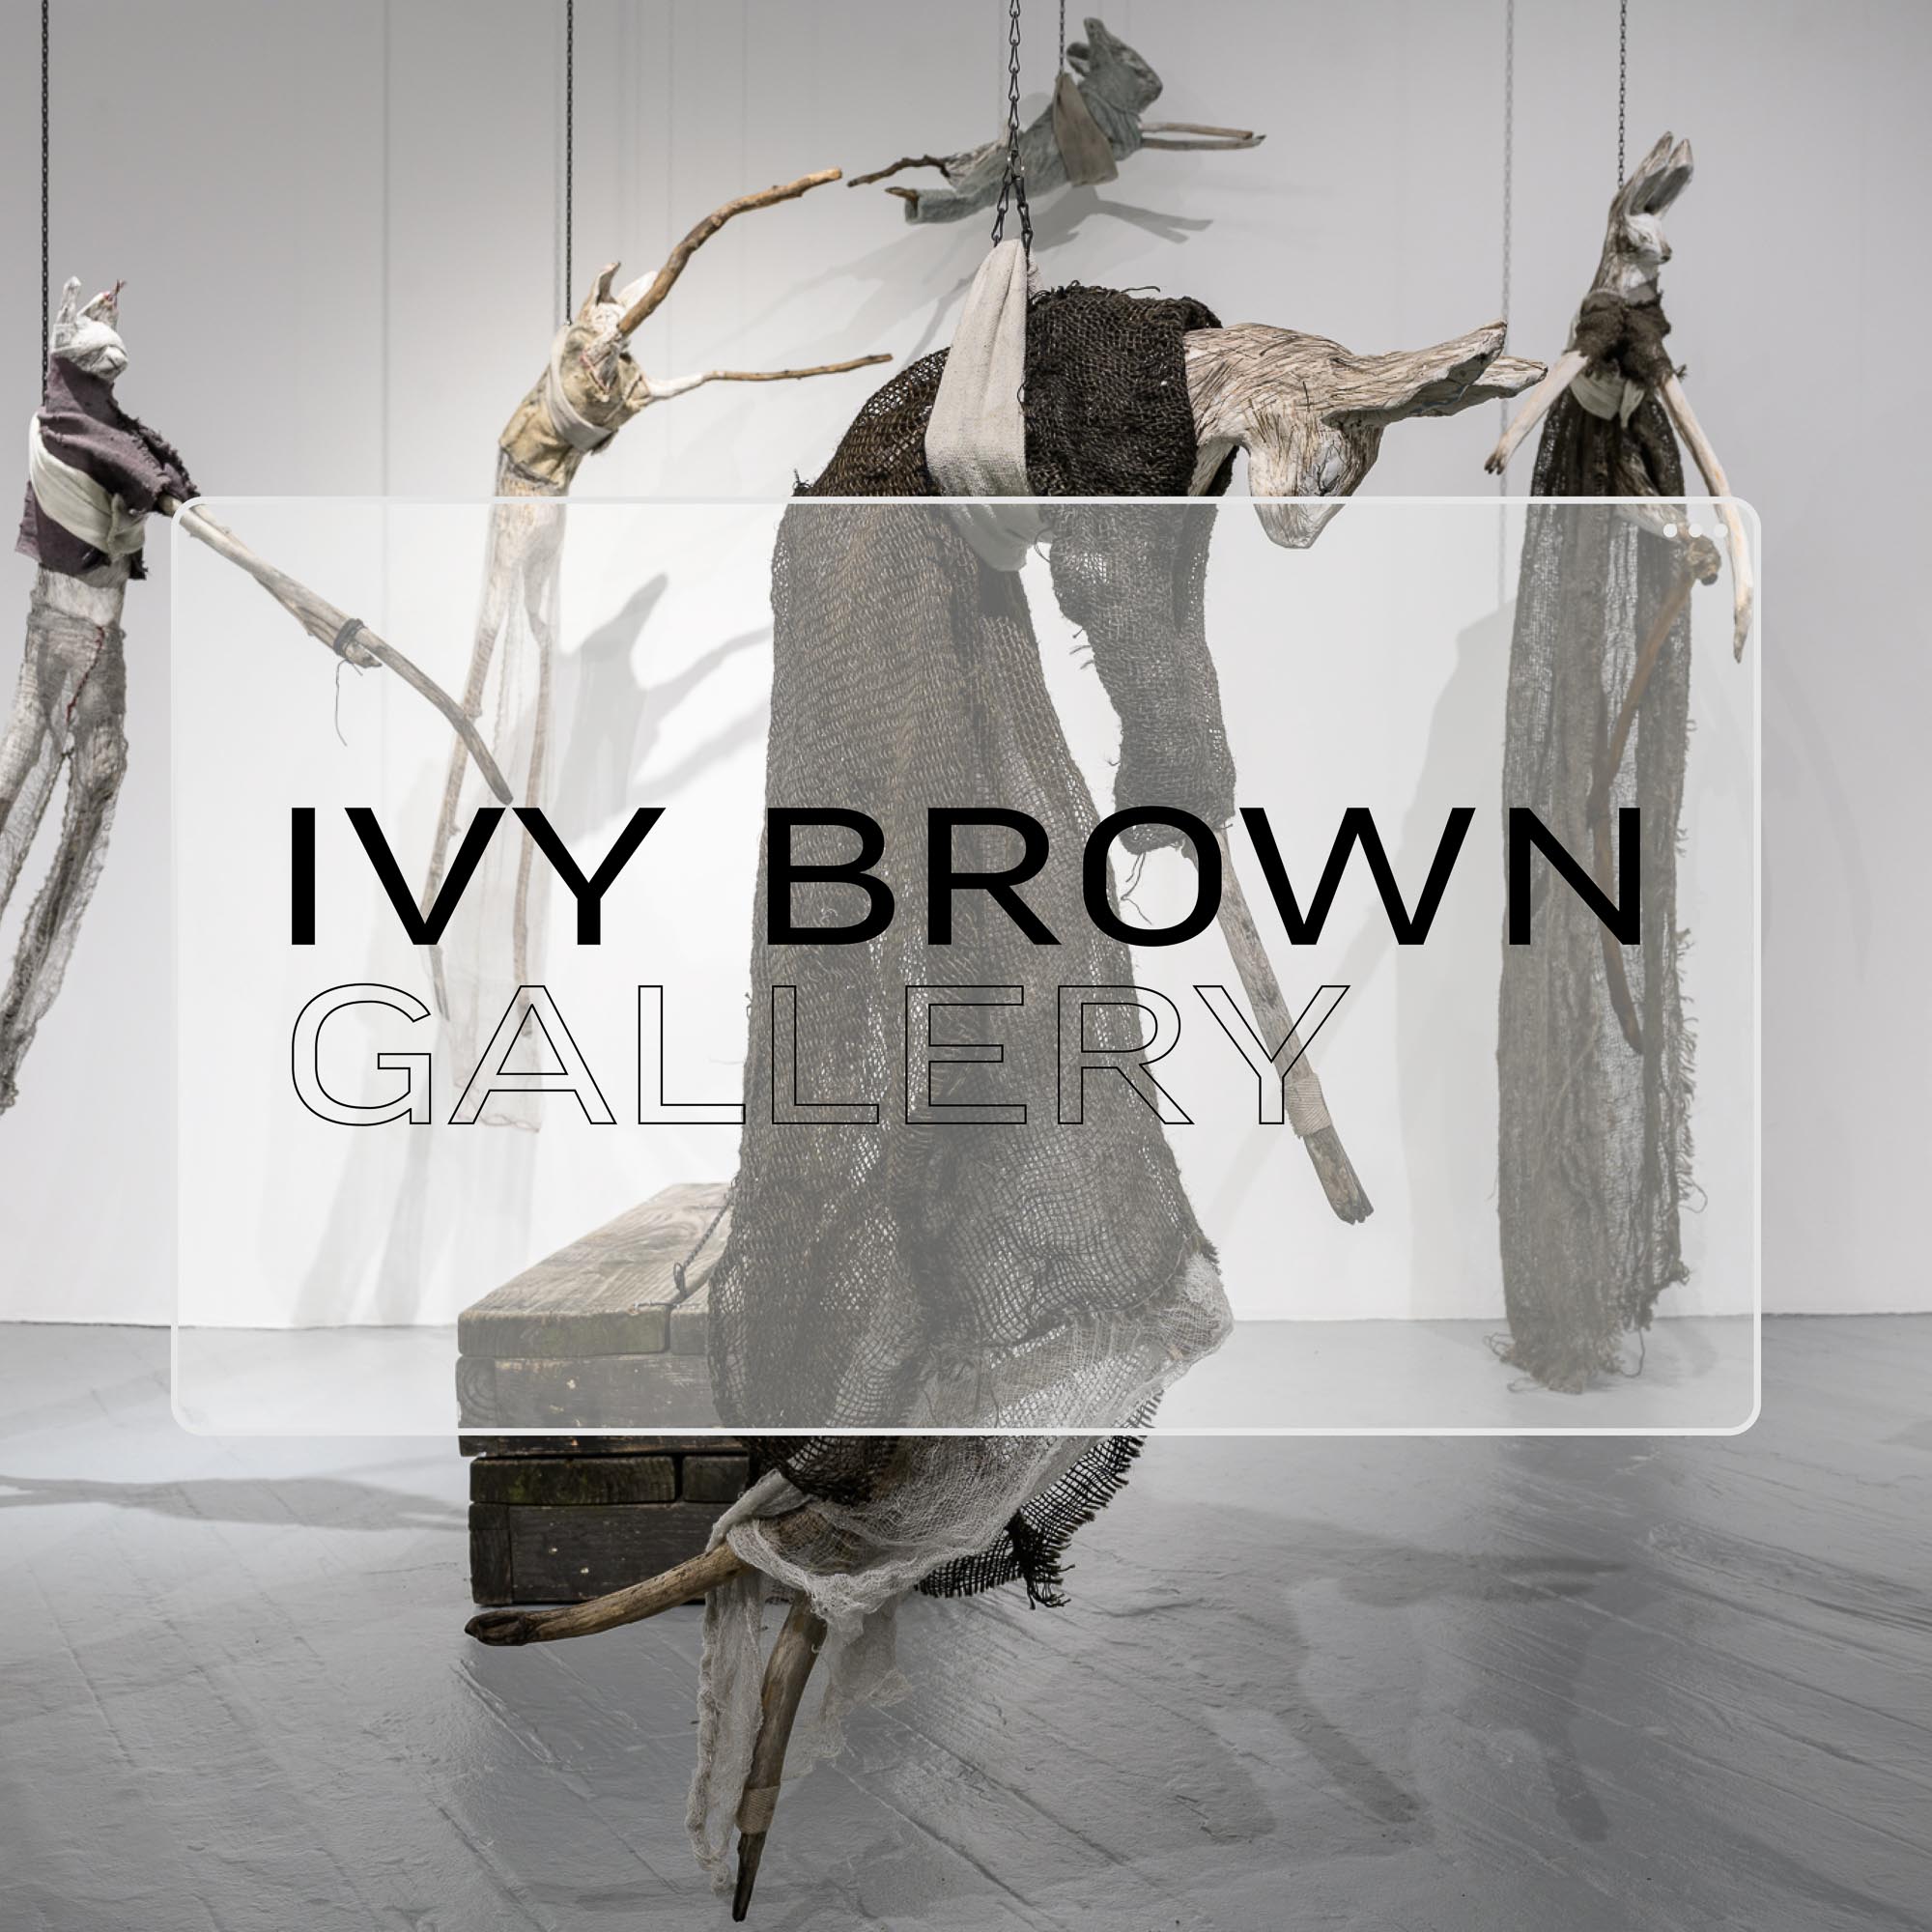 Ivy Brown Gallery